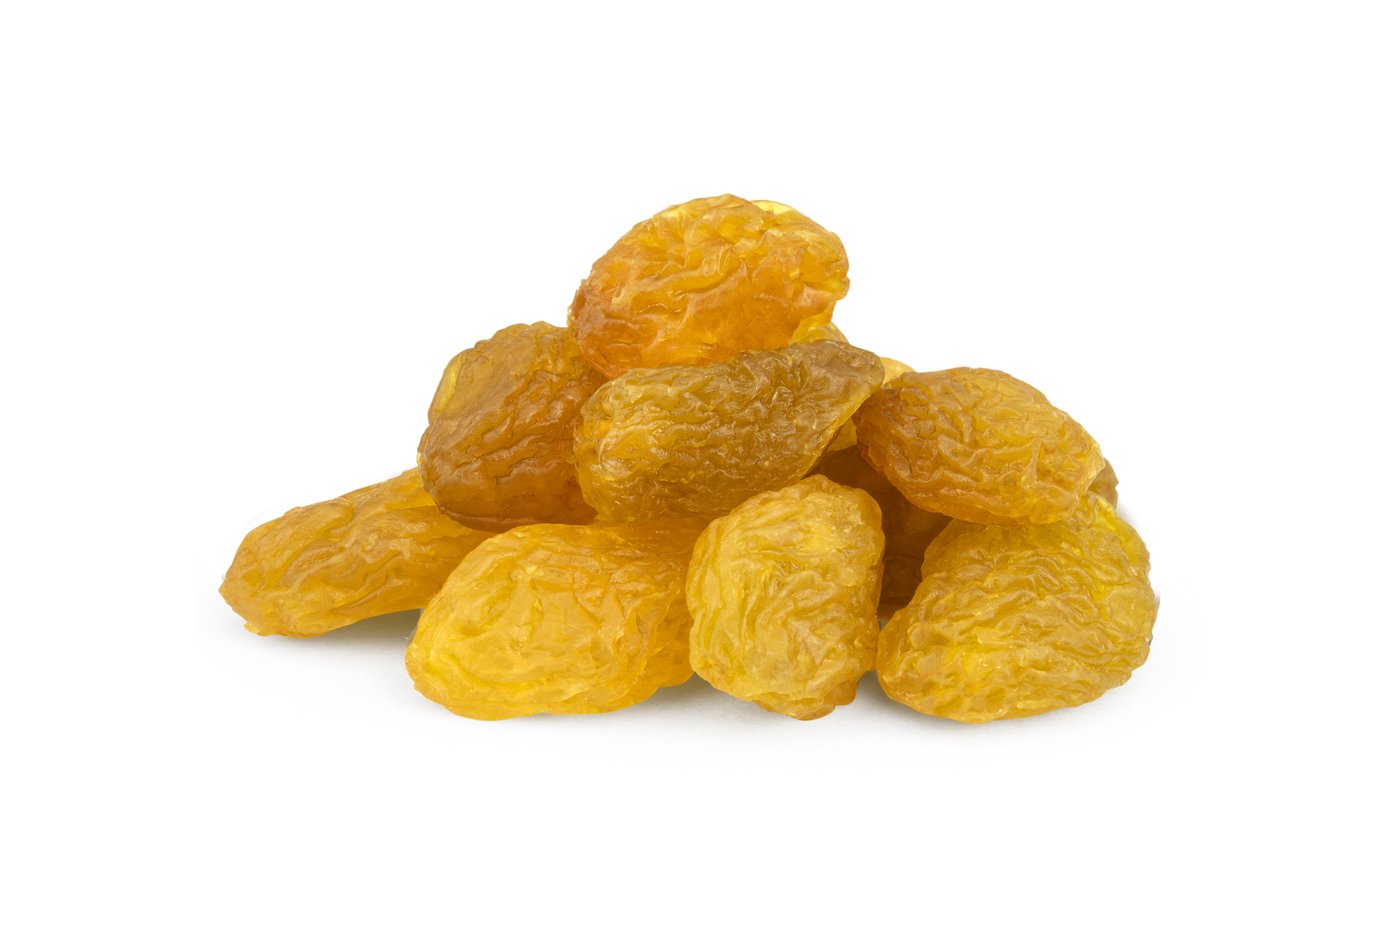 Jumbo Golden Raisins photo